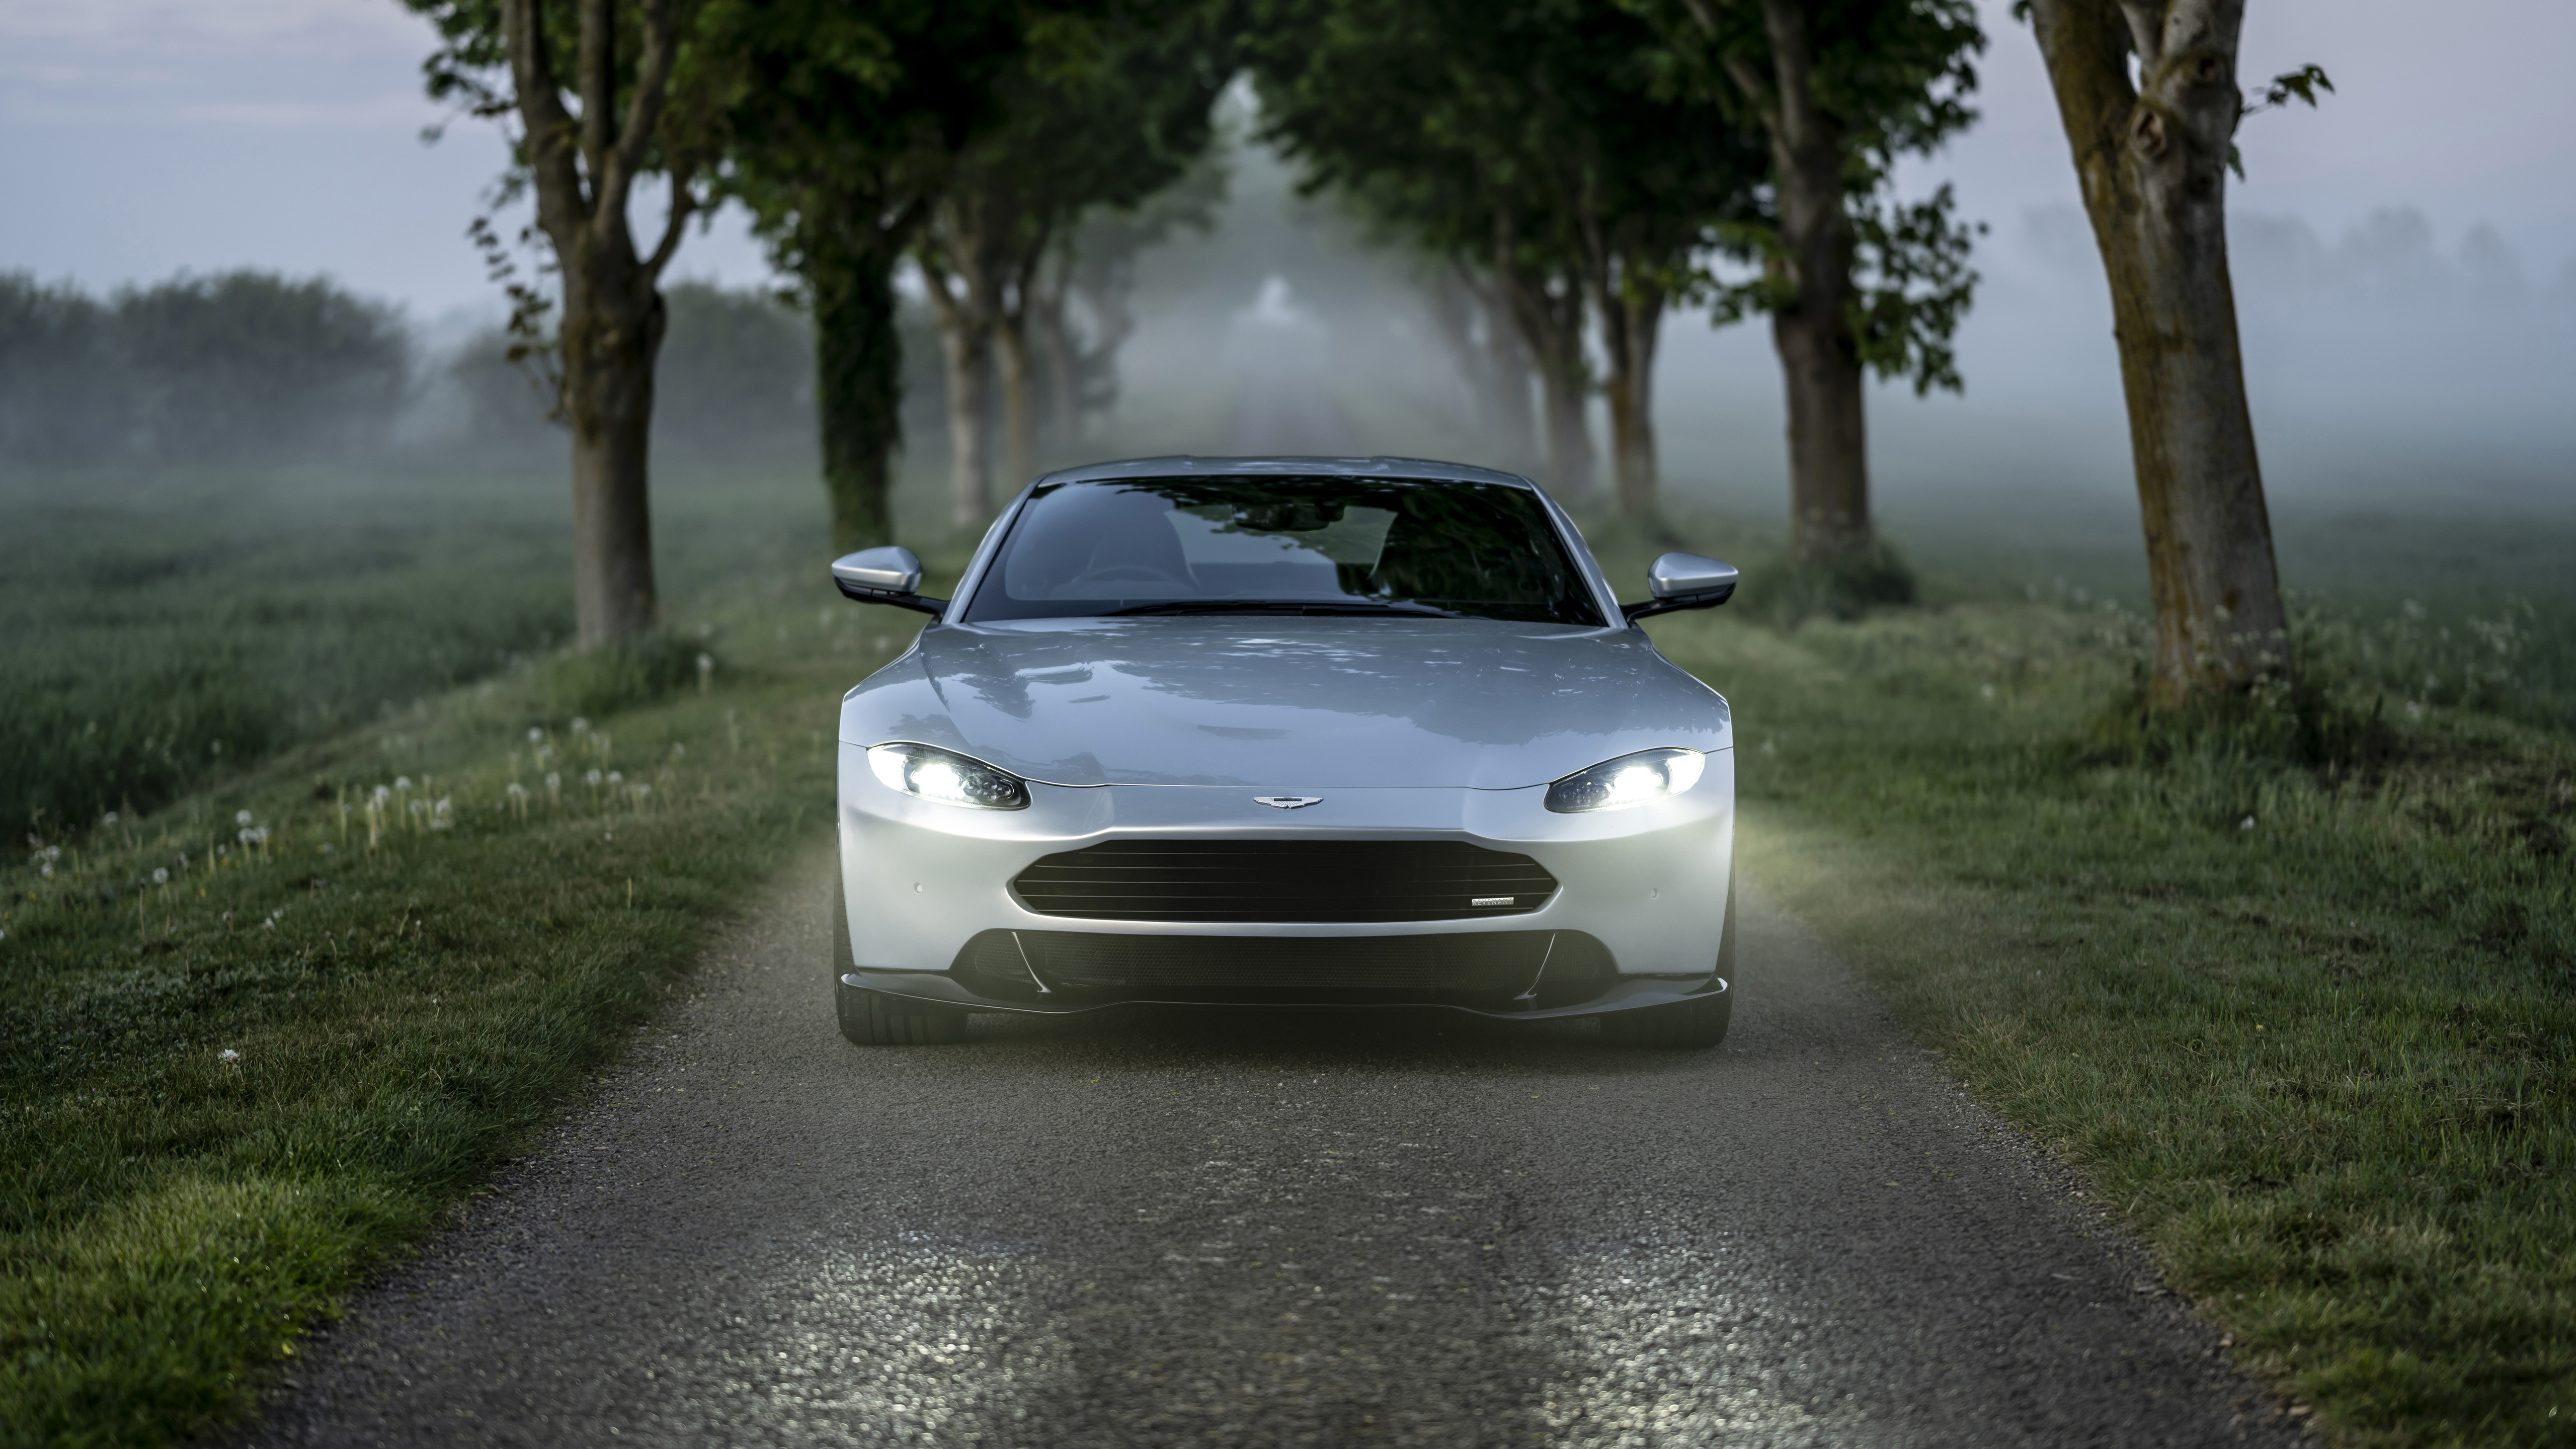 Wallpapers Aston Martin Vantage Aston Martin cars 2020 year on the desktop